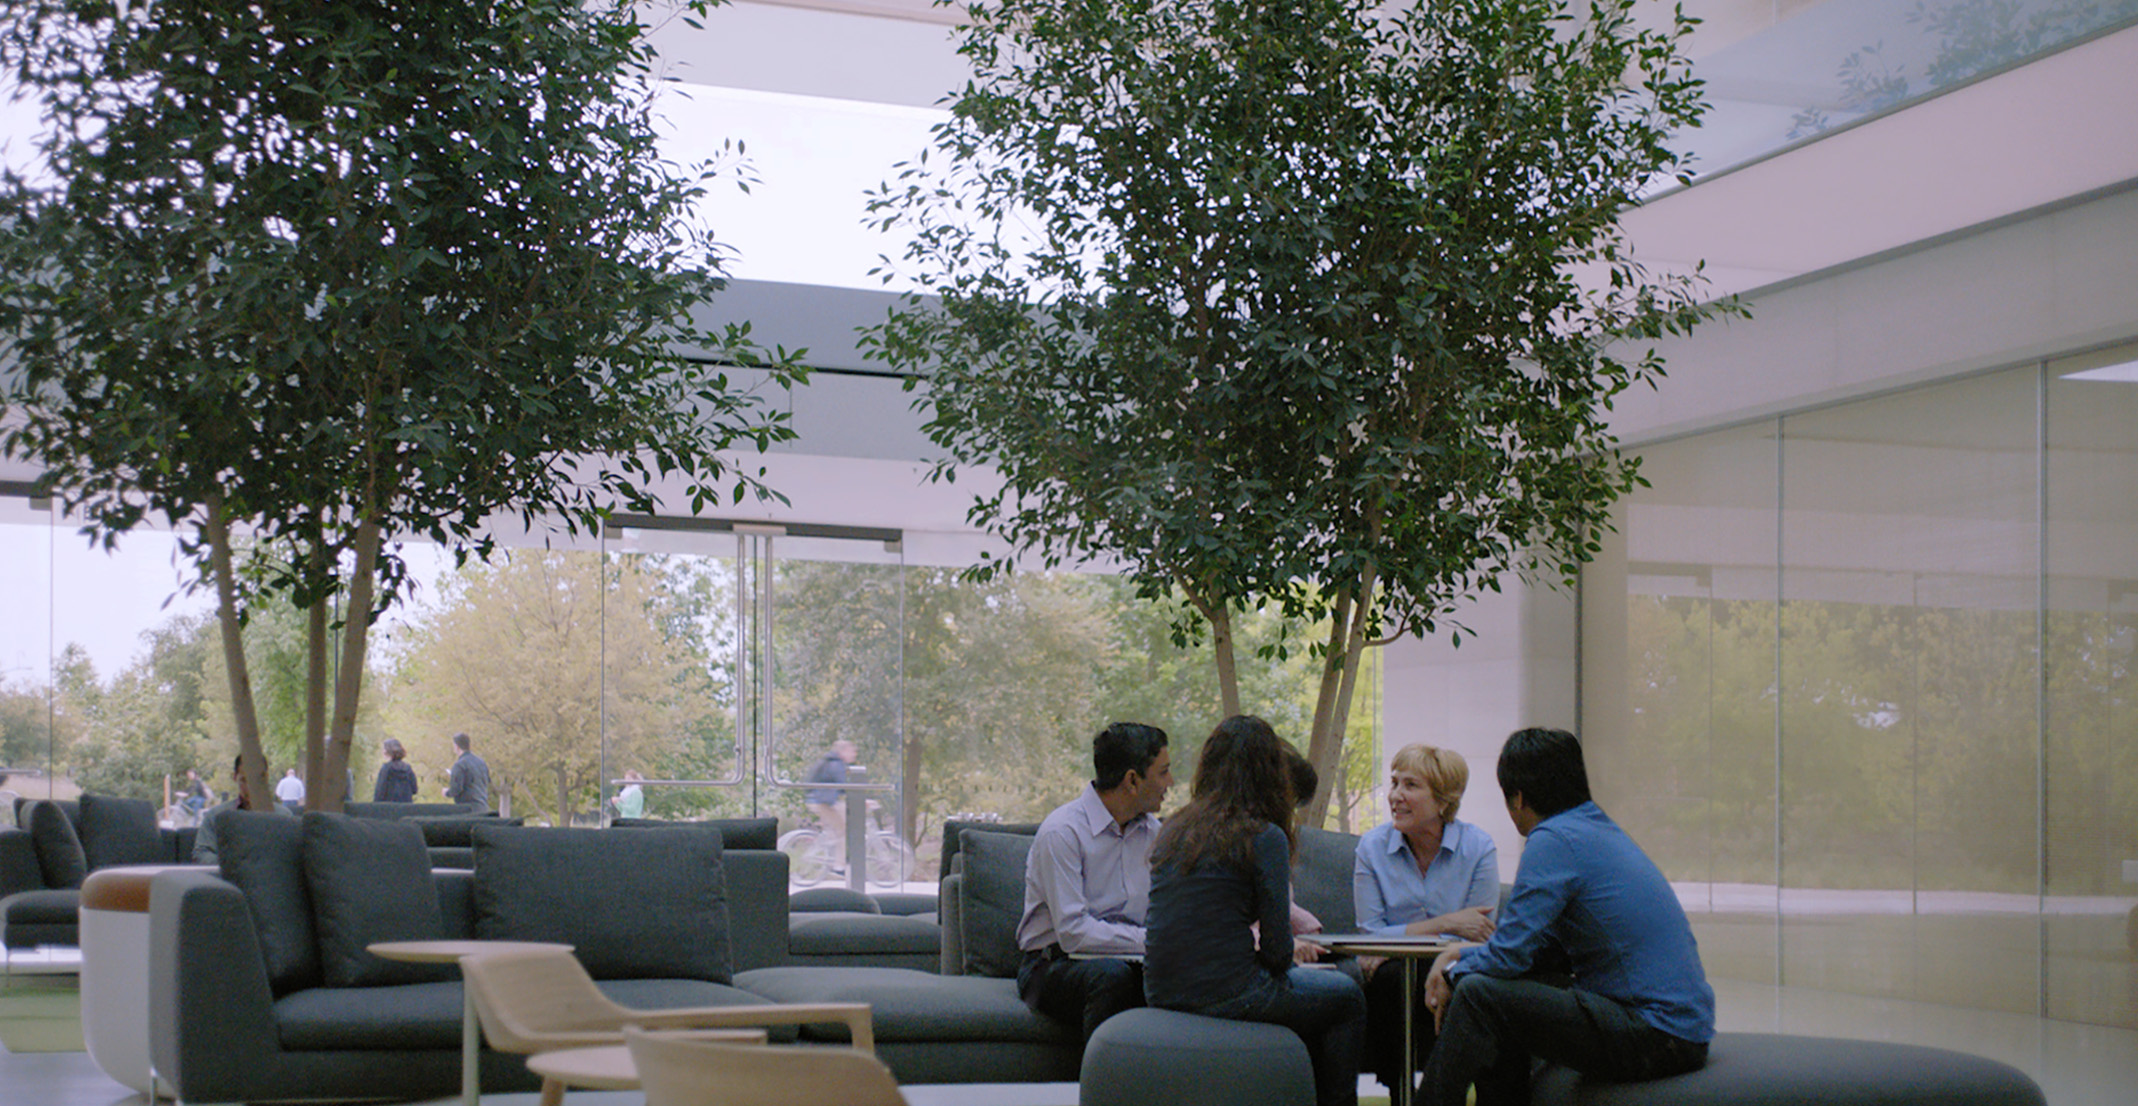 Giulia, responsable de l’équipe chargée du traitement automatique du langage naturel, assise à une table avec d’autres employés Apple.